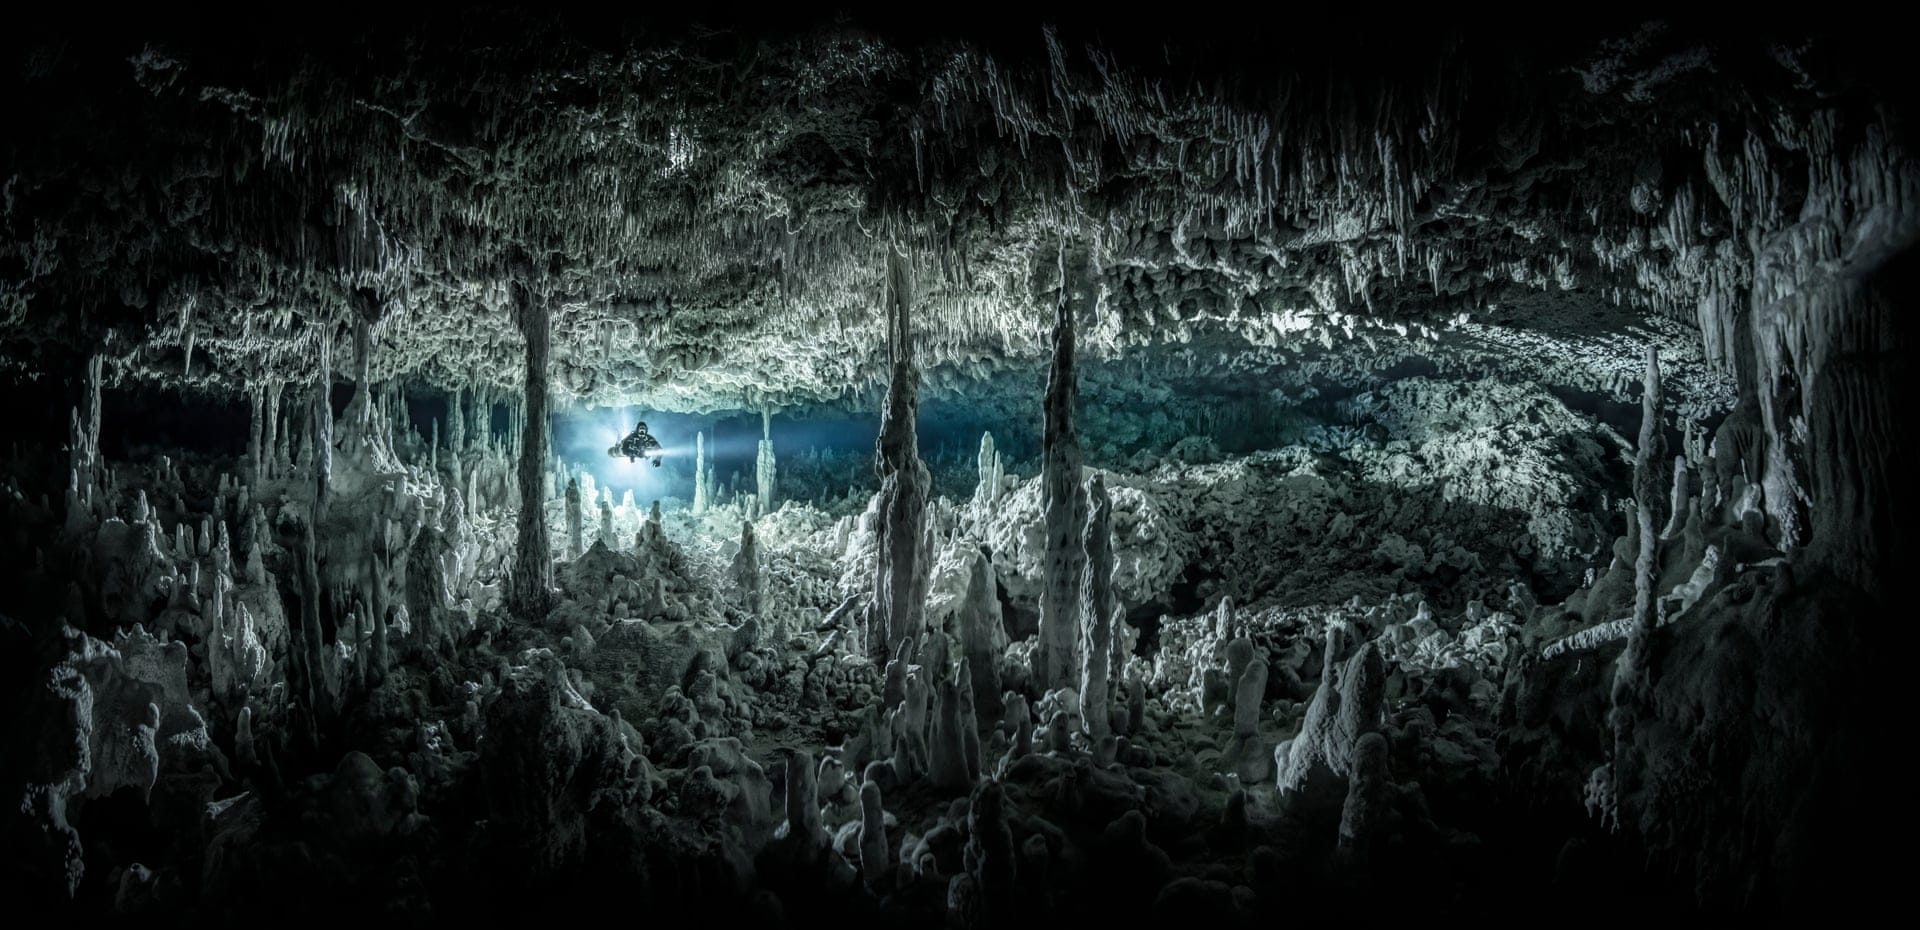 Grotte sous-marine avec des stalagmites 